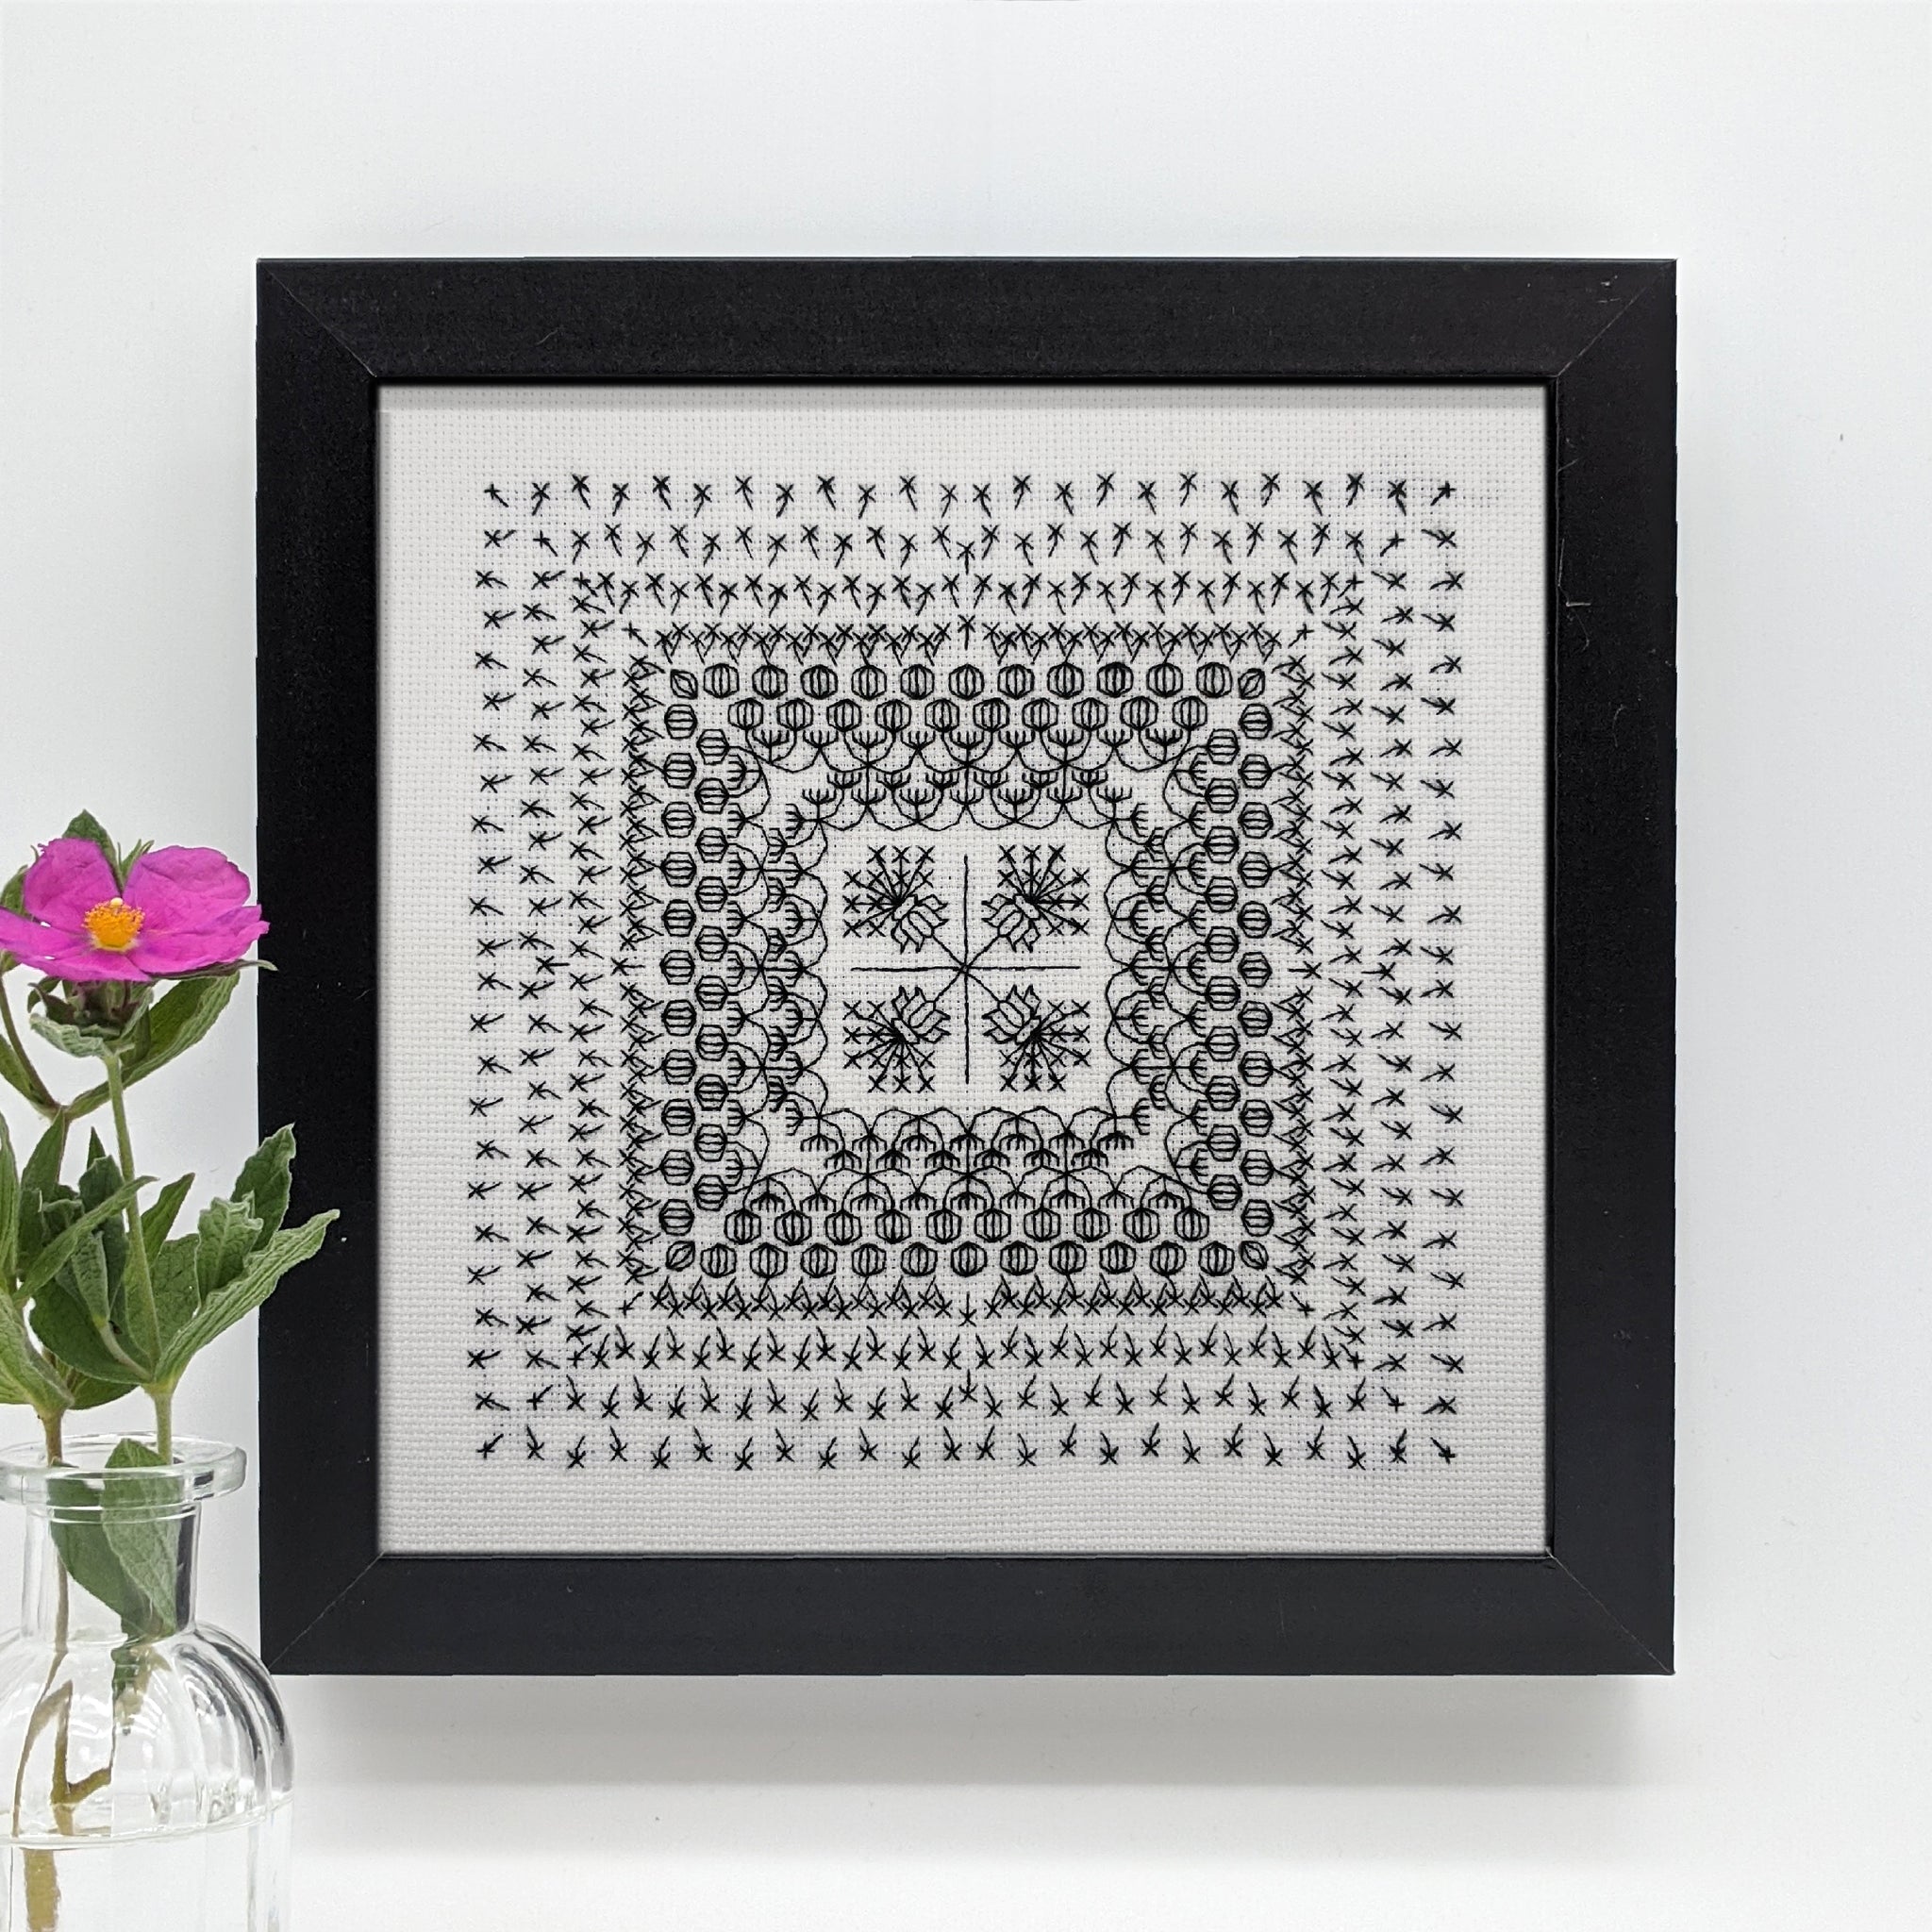 Blackwork embroidery botanical floral